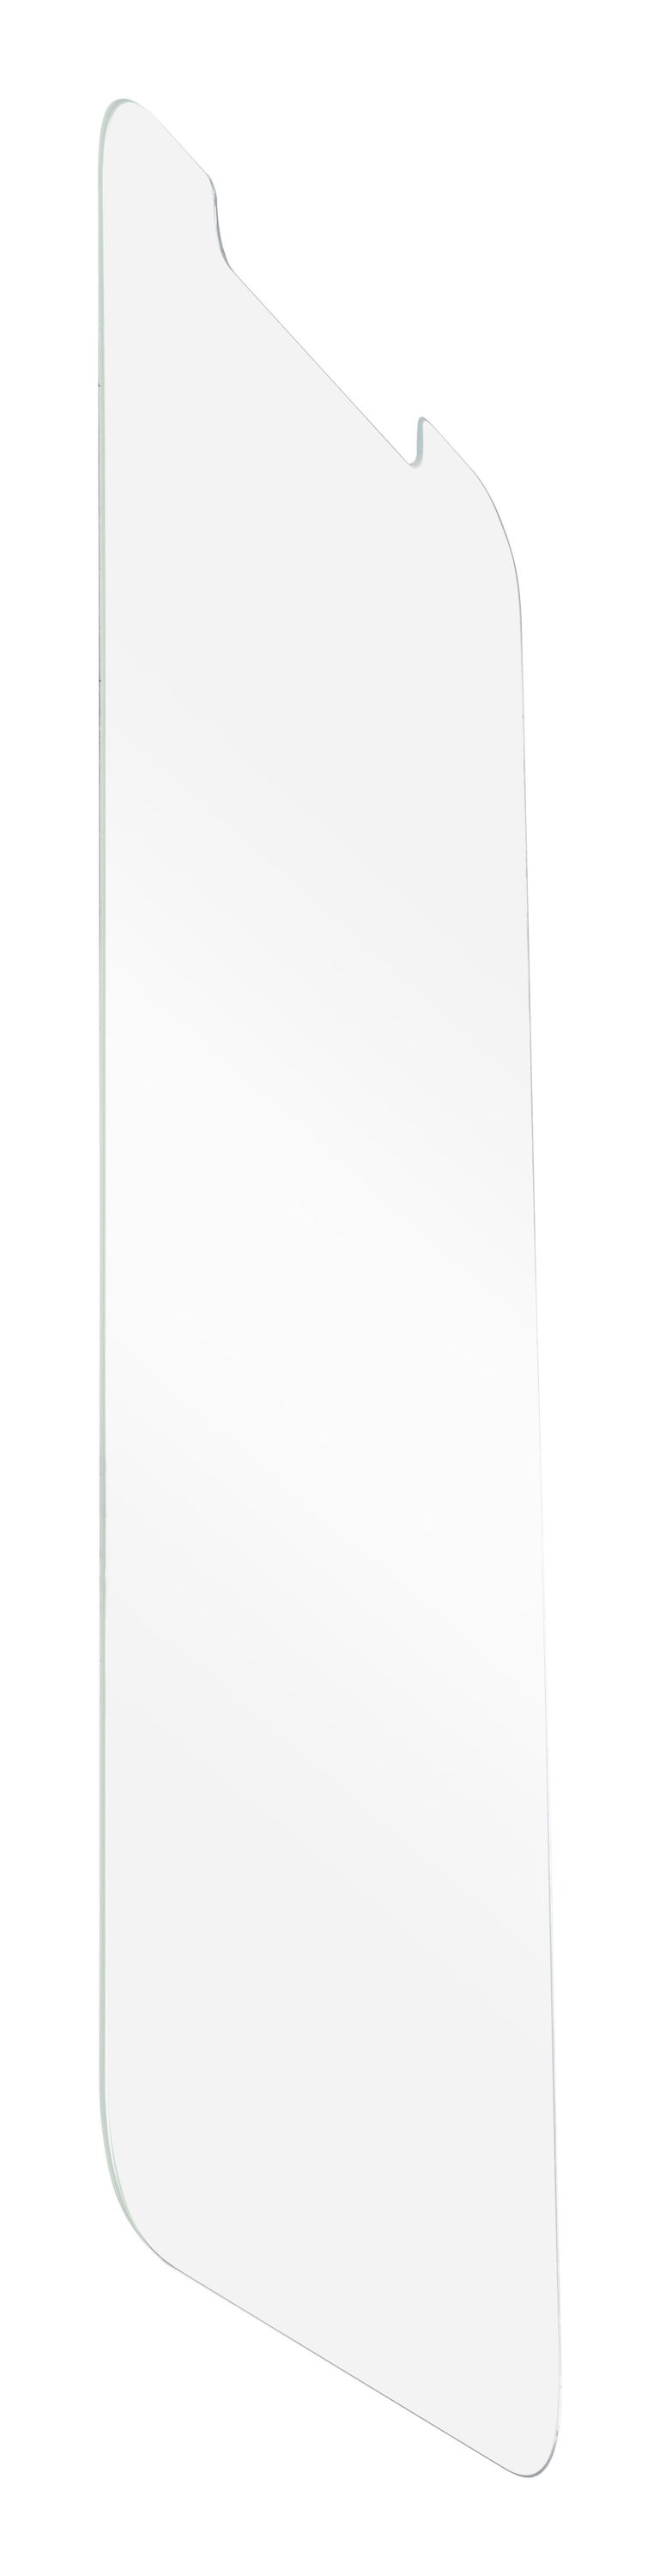 iPhone 12 Pro Max, SP tetra glass, transparent